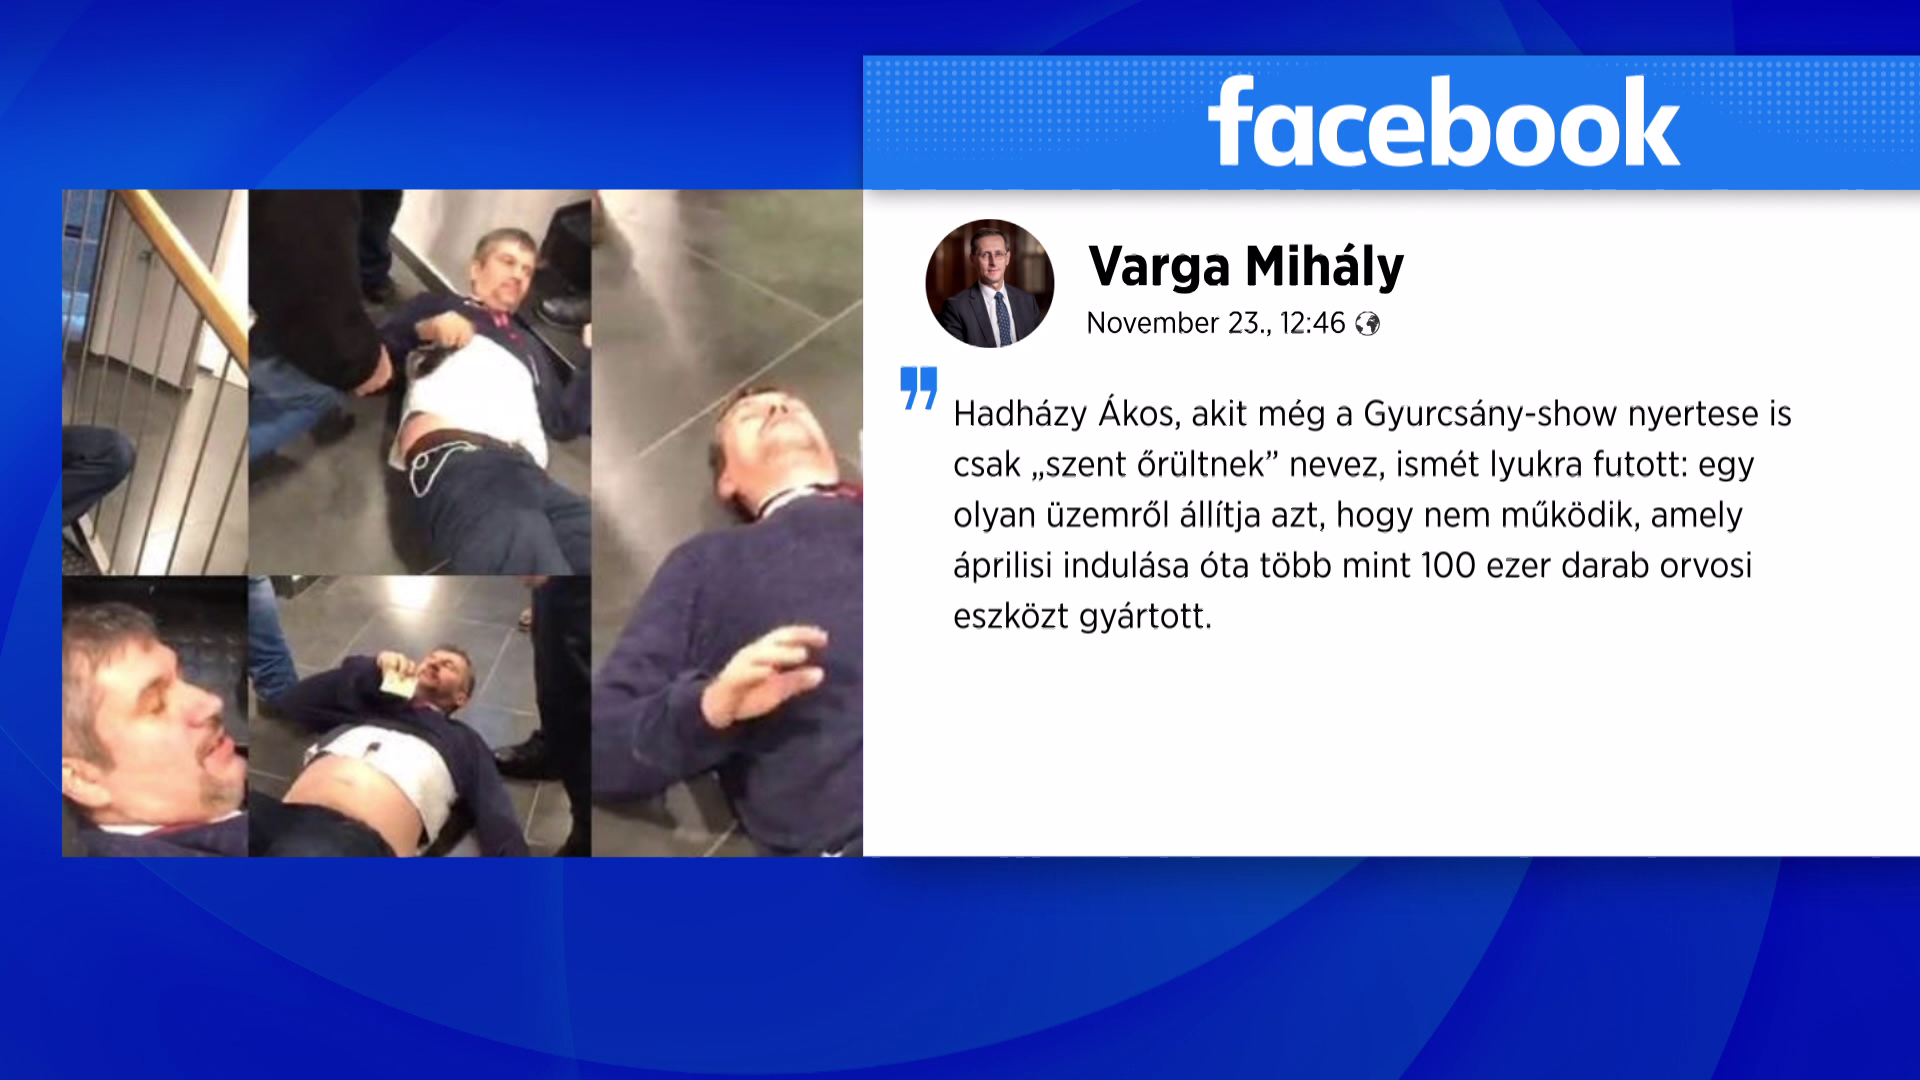 Varga Mihály: Hadházy most egy egészségipari beruházást támad 